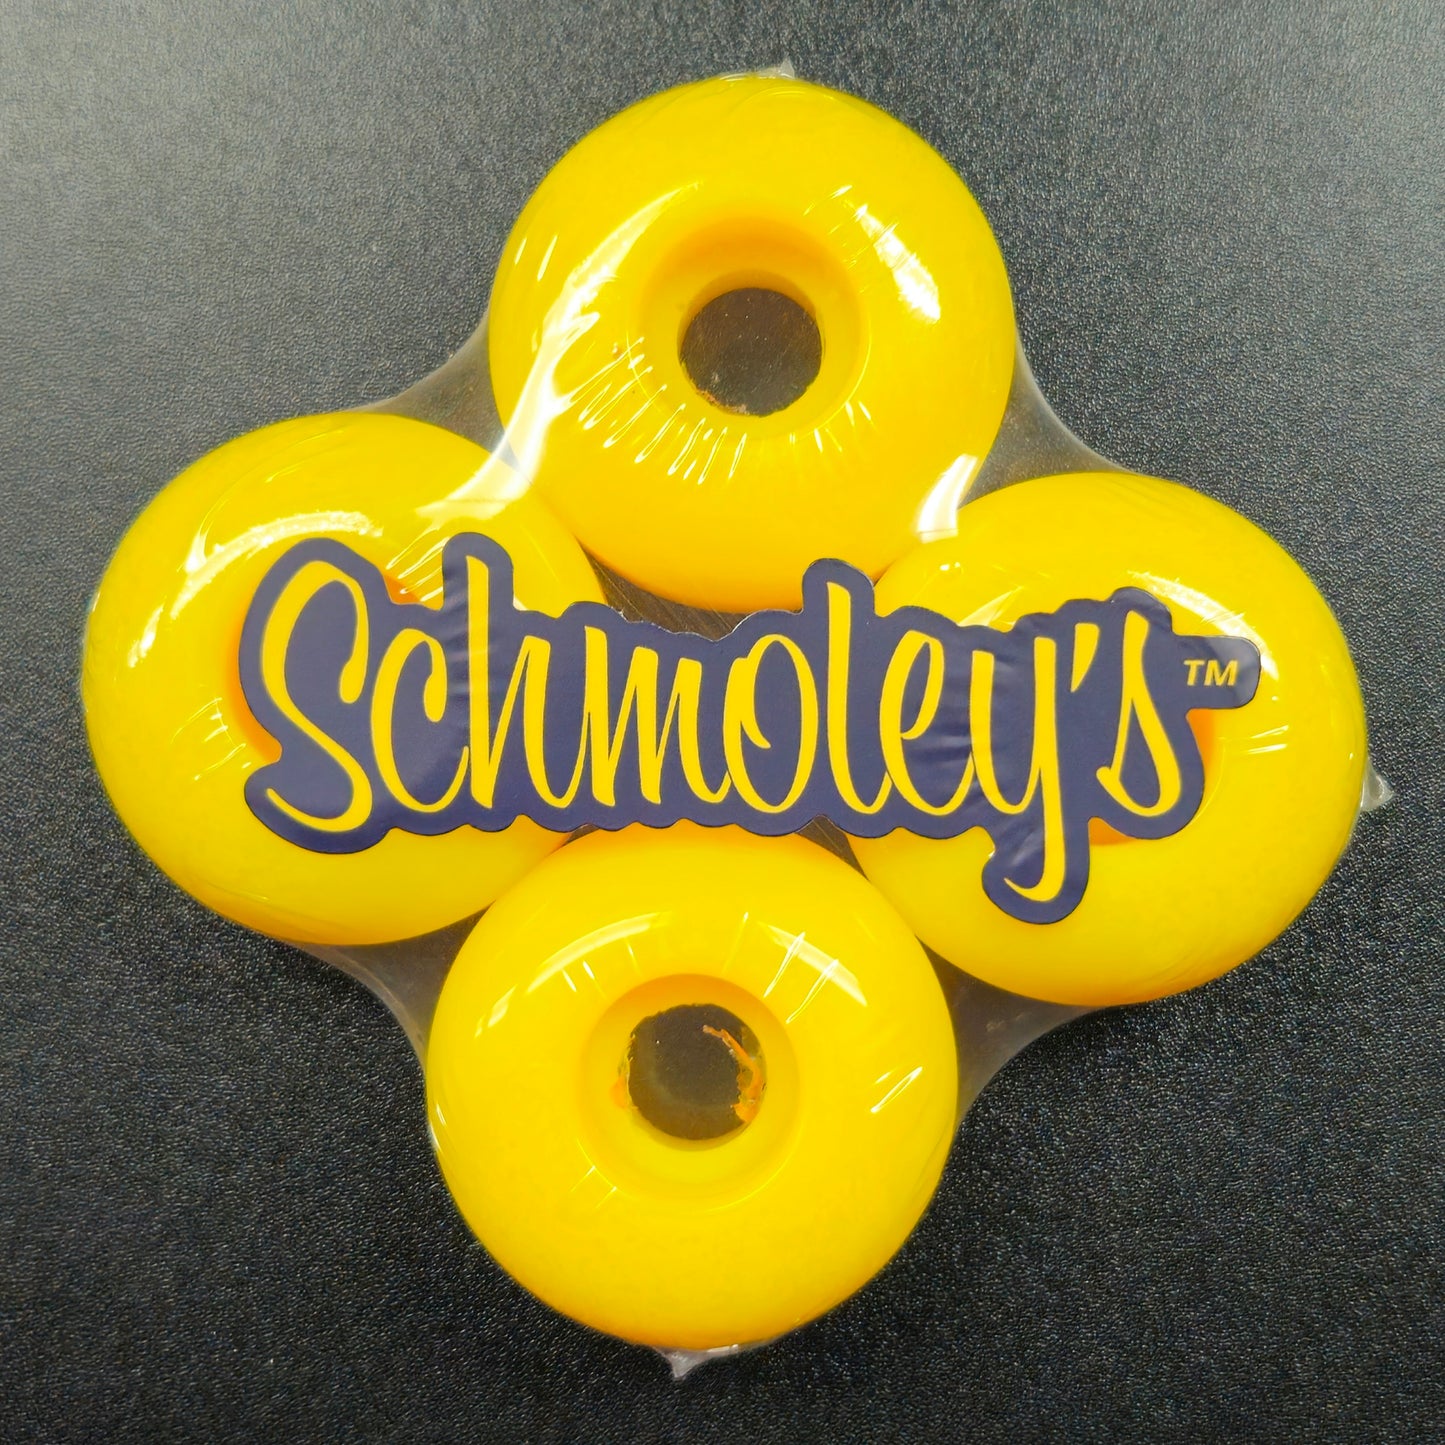 Schmoley's Skateboard Wheels